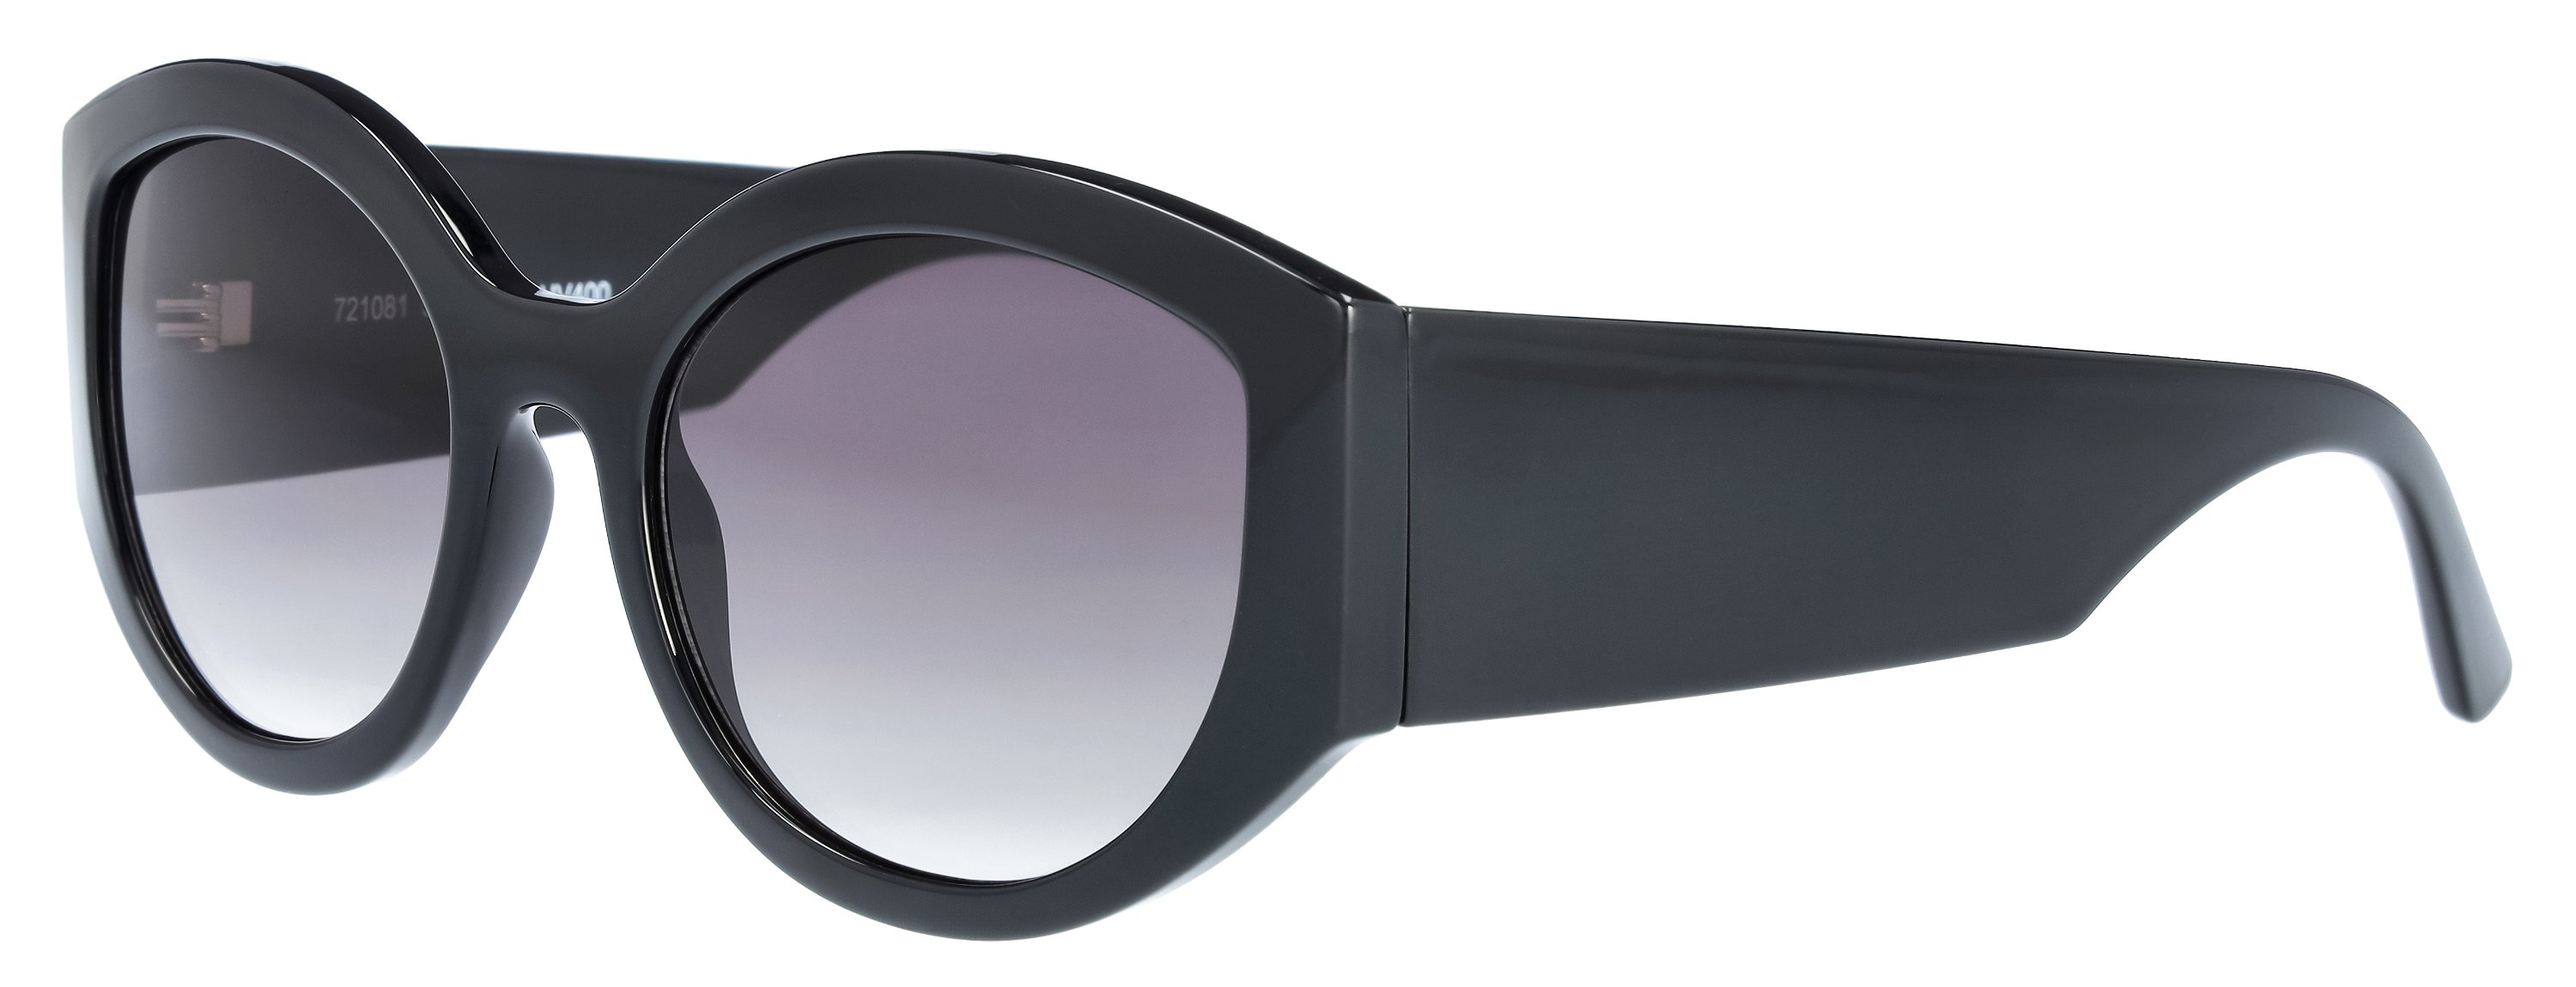 Das Bild zeigt die Sonnenbrille für  Damen  721081 in schwarz